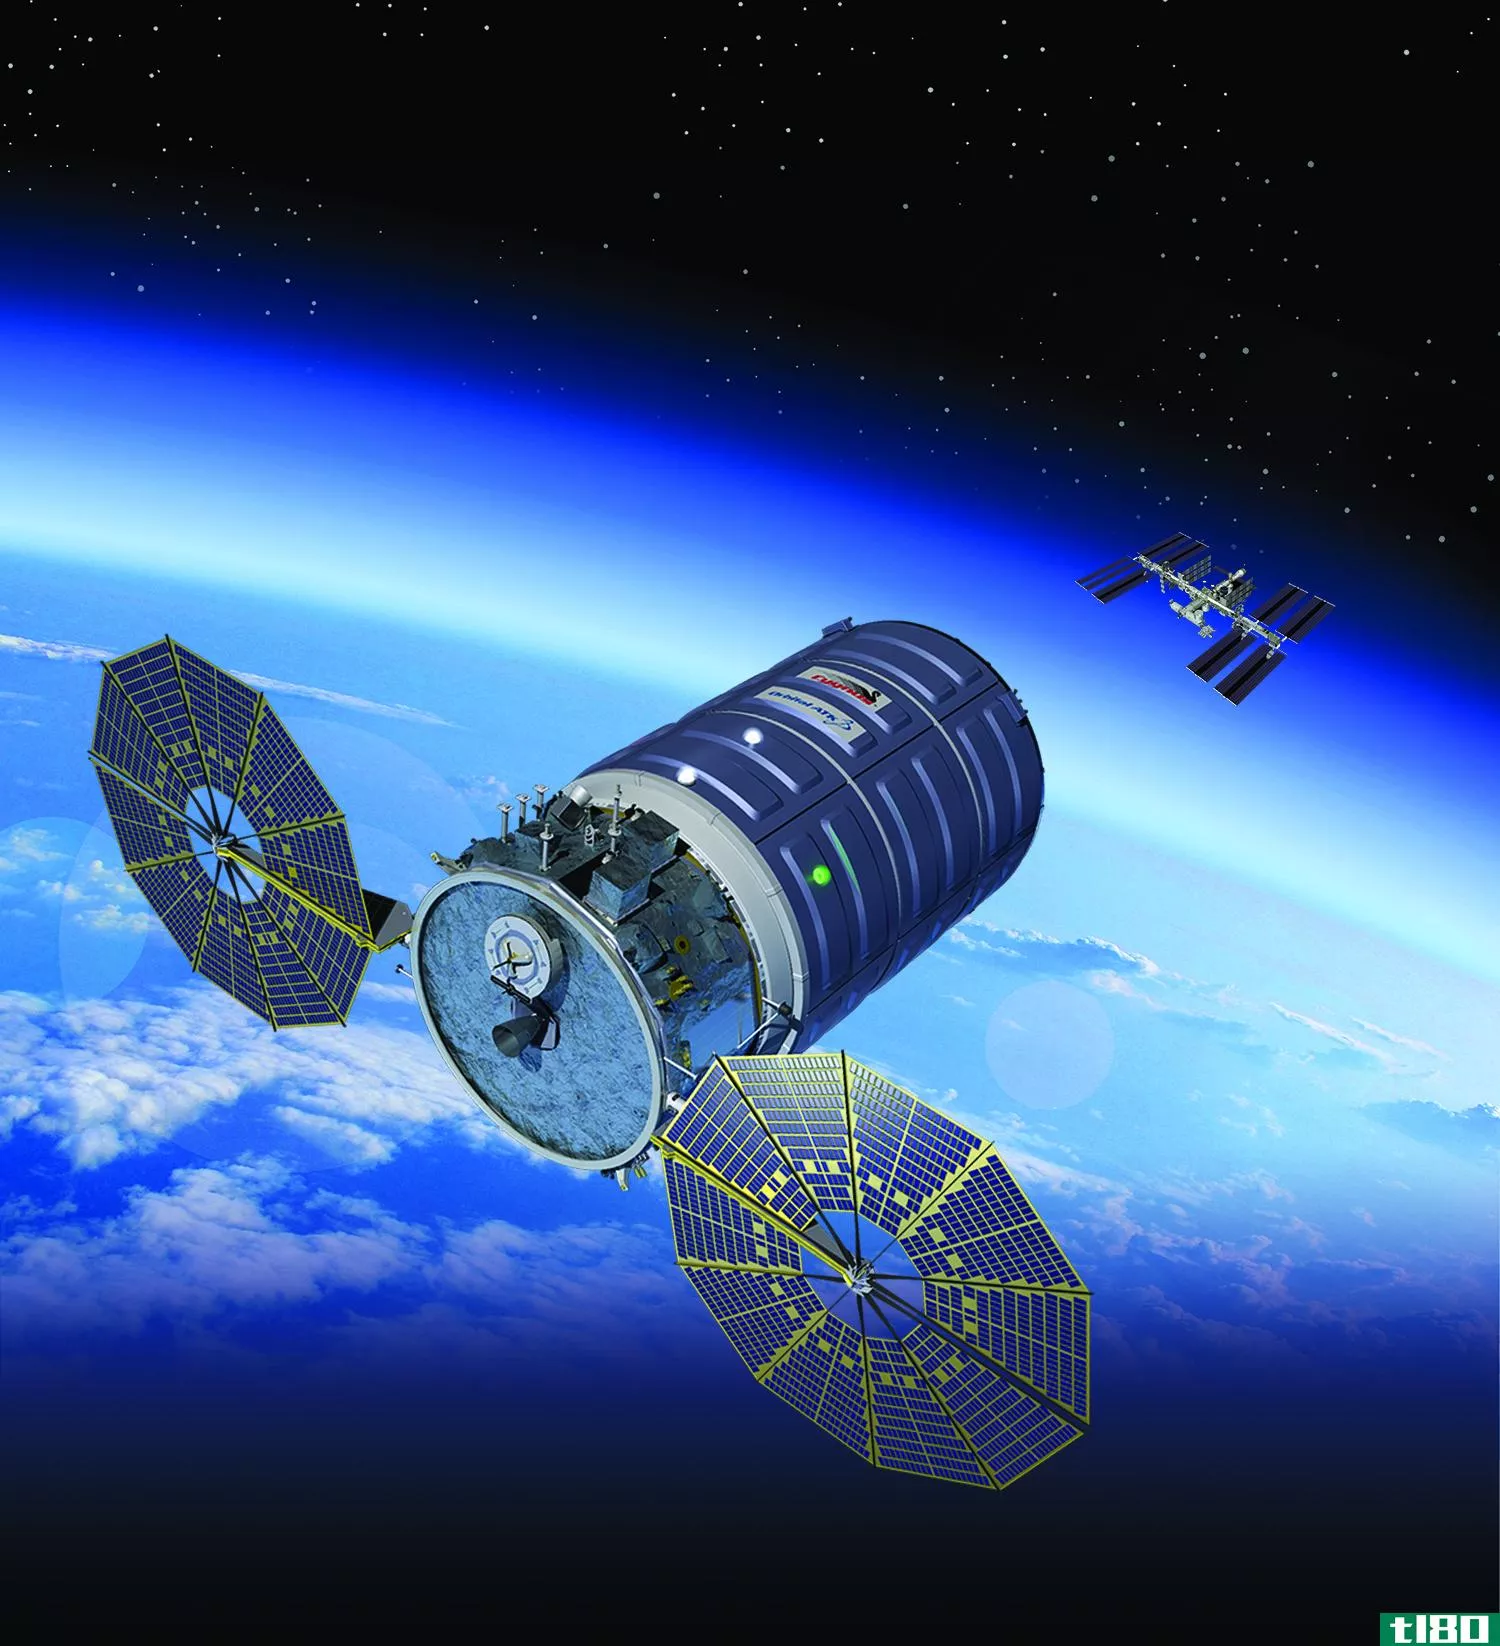 轨道atk将启动2014年火箭爆炸以来的首次补给任务